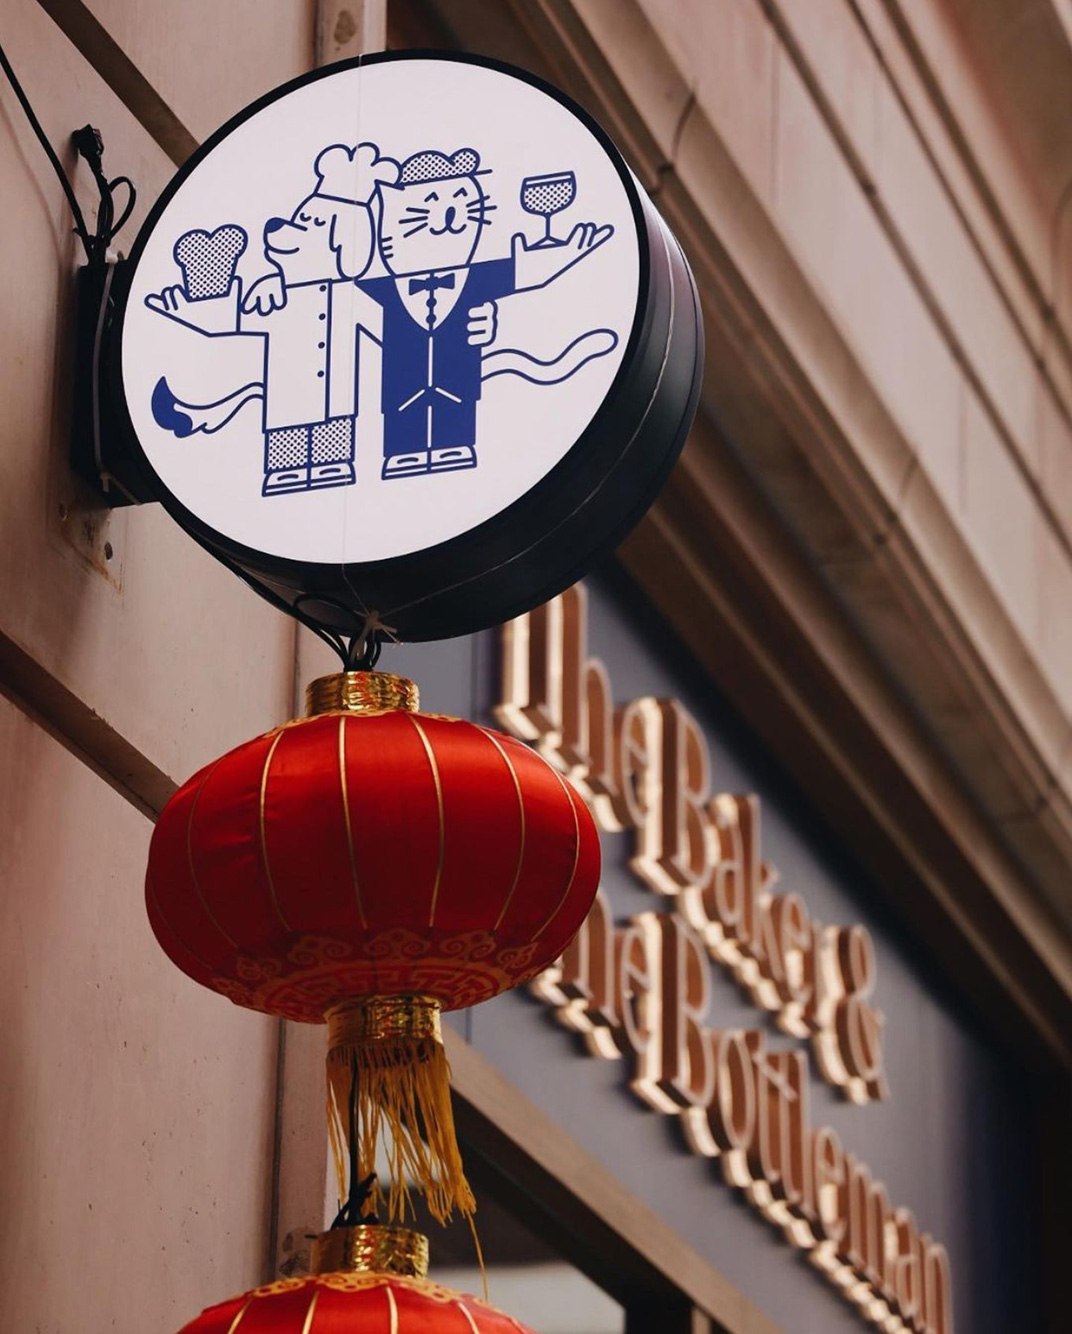 手工技术面包店 香港 北京 面包店 欧式 插画设计 插图设计 logo设计 vi设计 空间设计